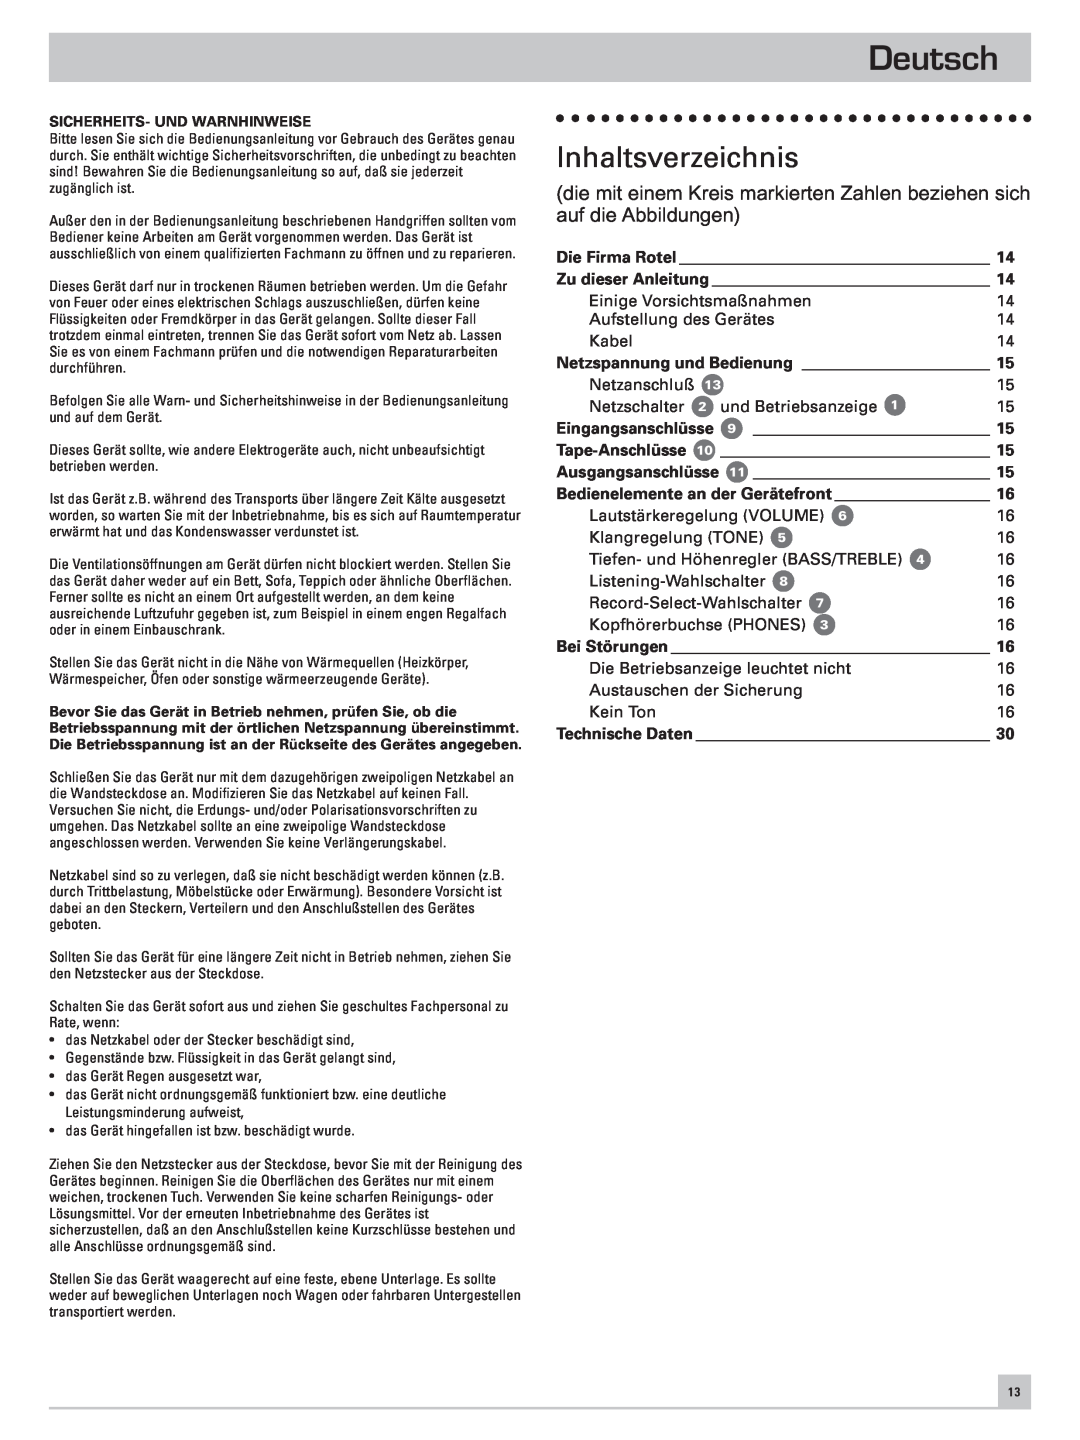 Rotel RC-971 owner manual Deutsch, Inhaltsverzeichnis 